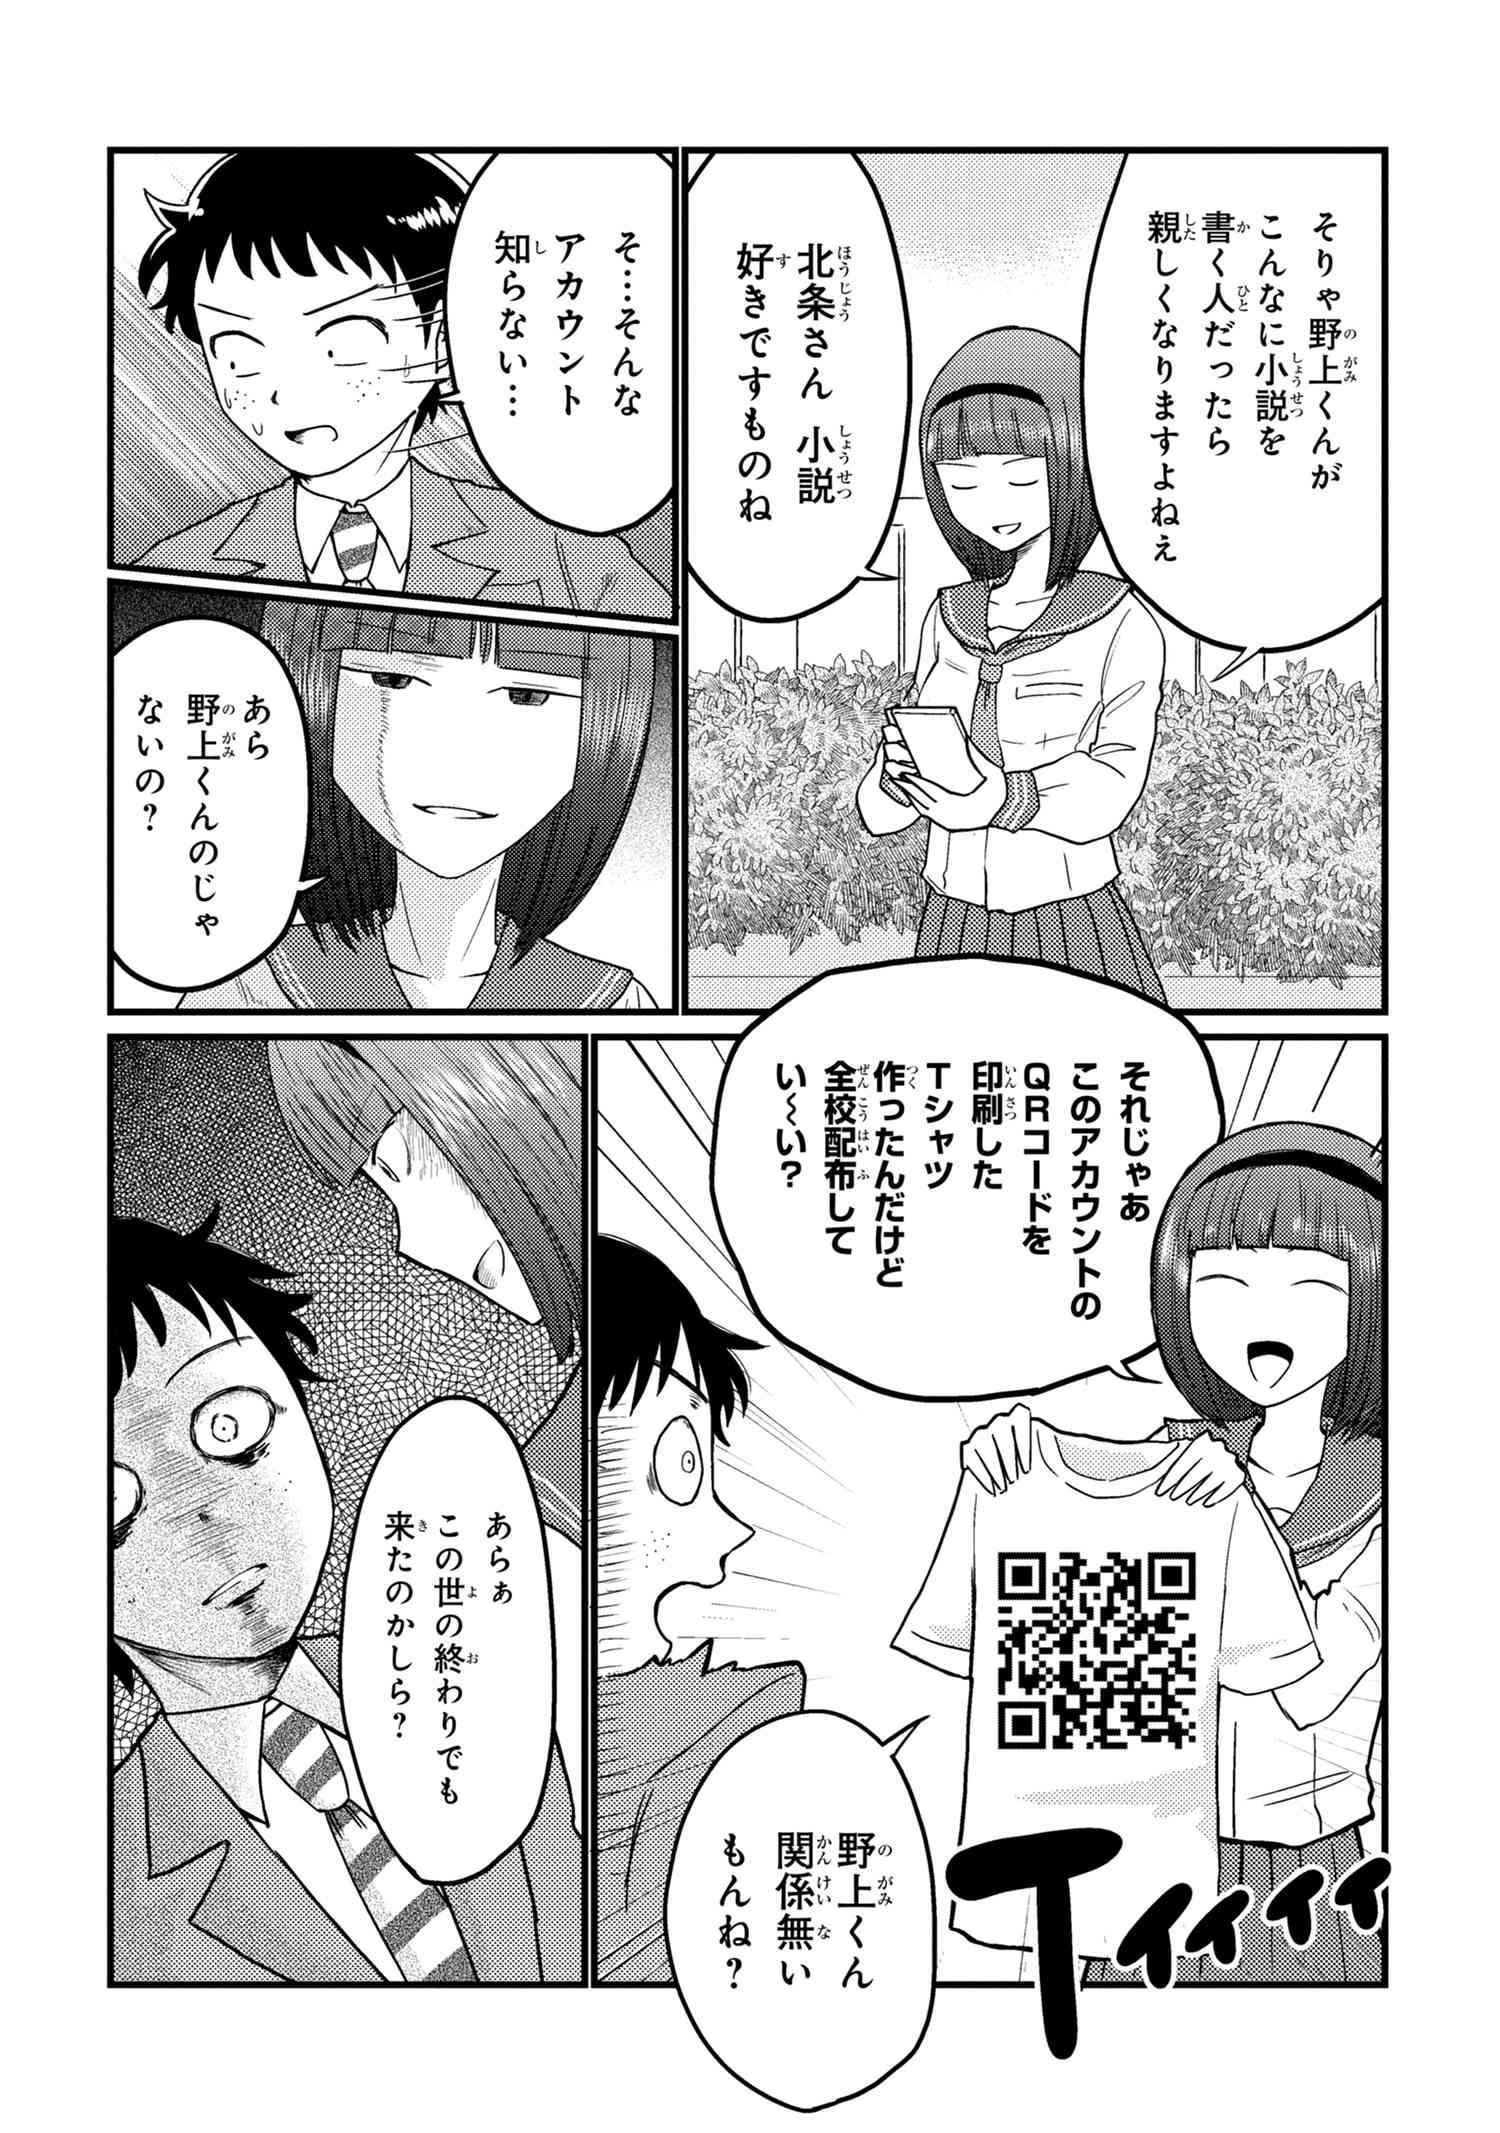 Houjou Urara no renai shousetsu o kaki nasai! - Chapter 15 - Page 2